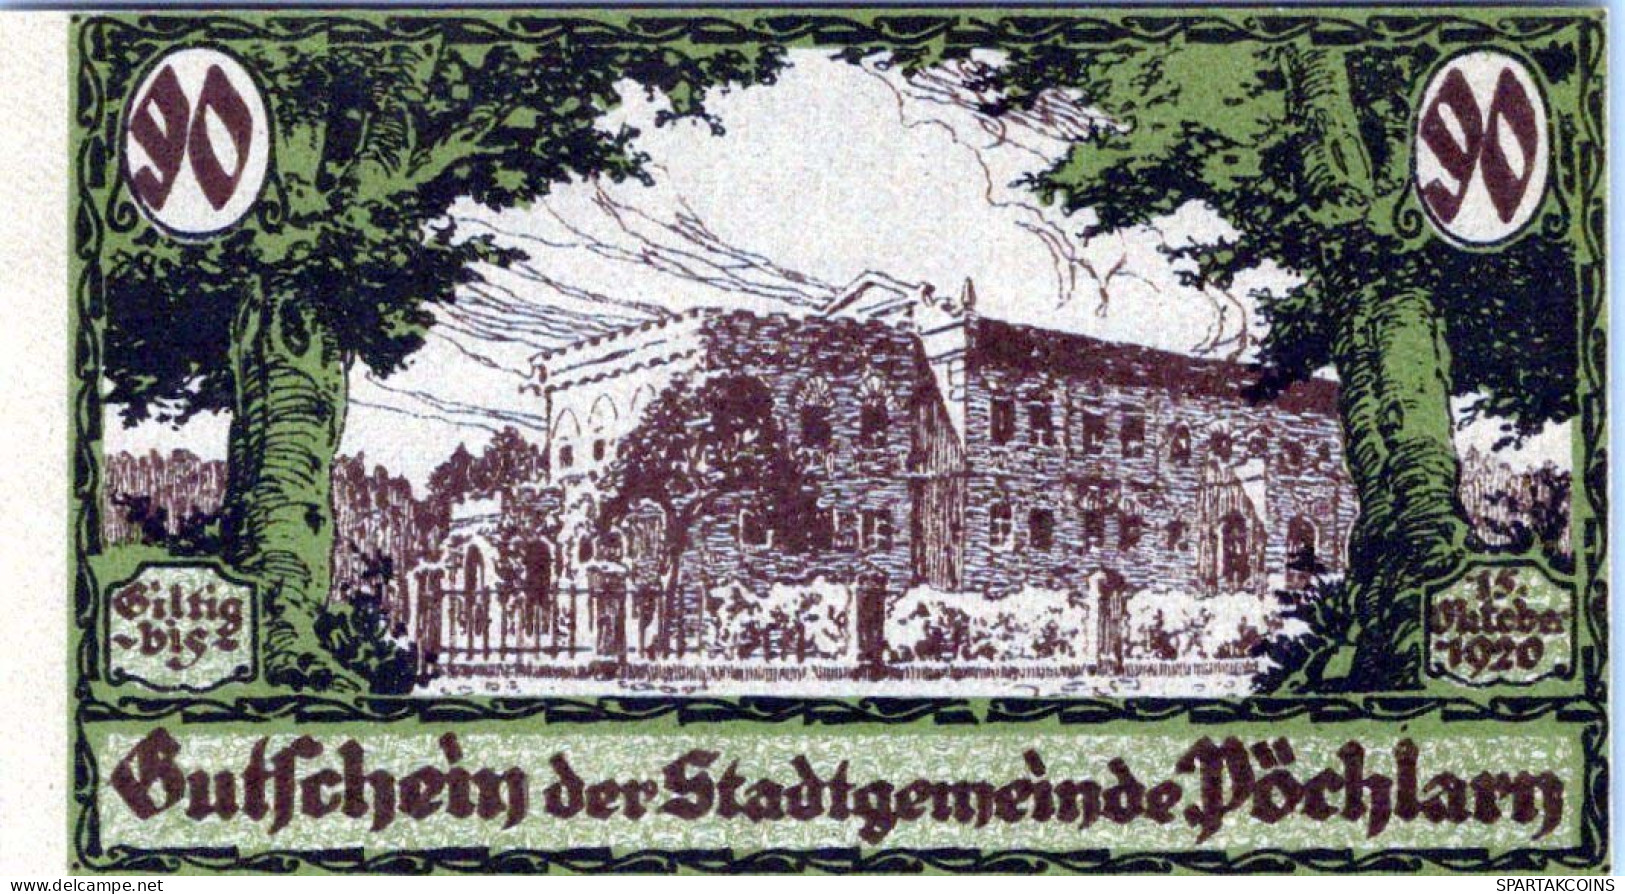 90 HELLER 1920 Stadt PoCHLARN Niedrigeren Österreich UNC Österreich Notgeld #PH477 - [11] Local Banknote Issues